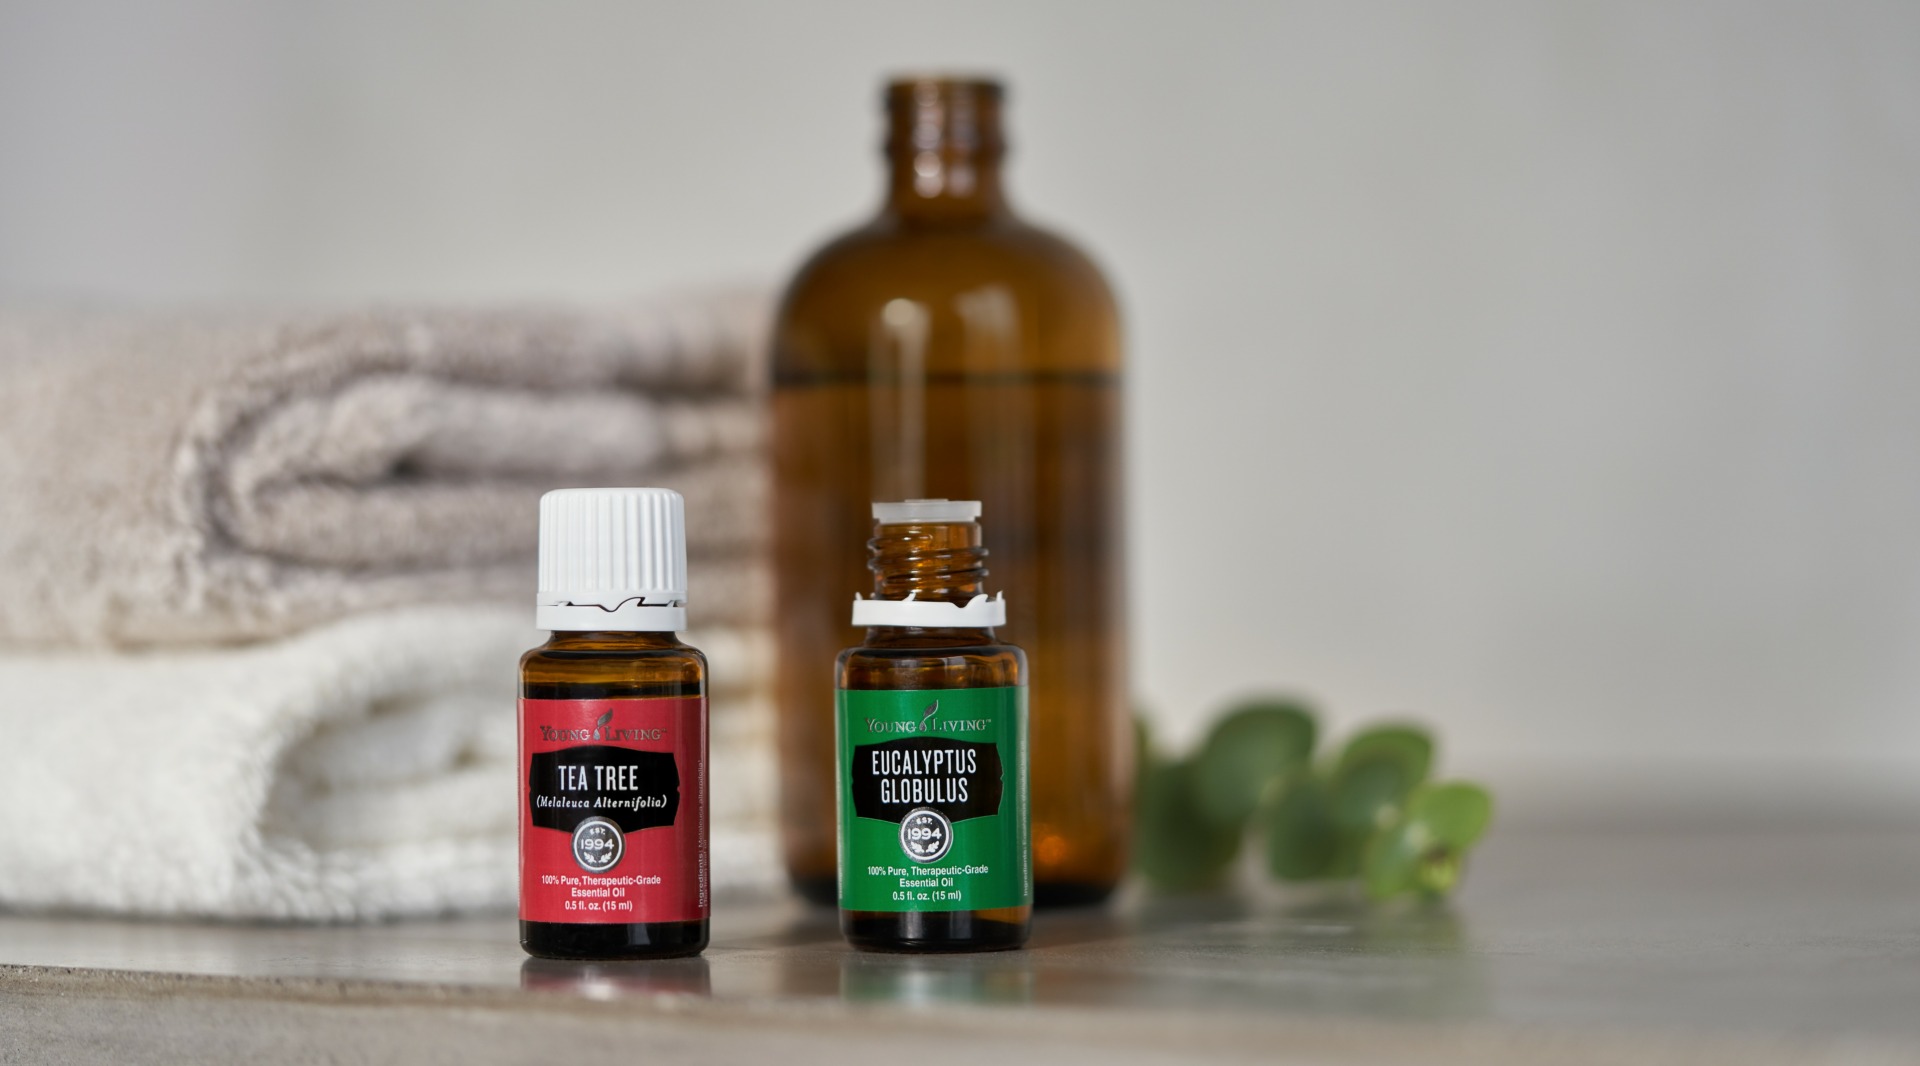 Tea Tree and Eucalyptus Globulus essential oils in the bathroom